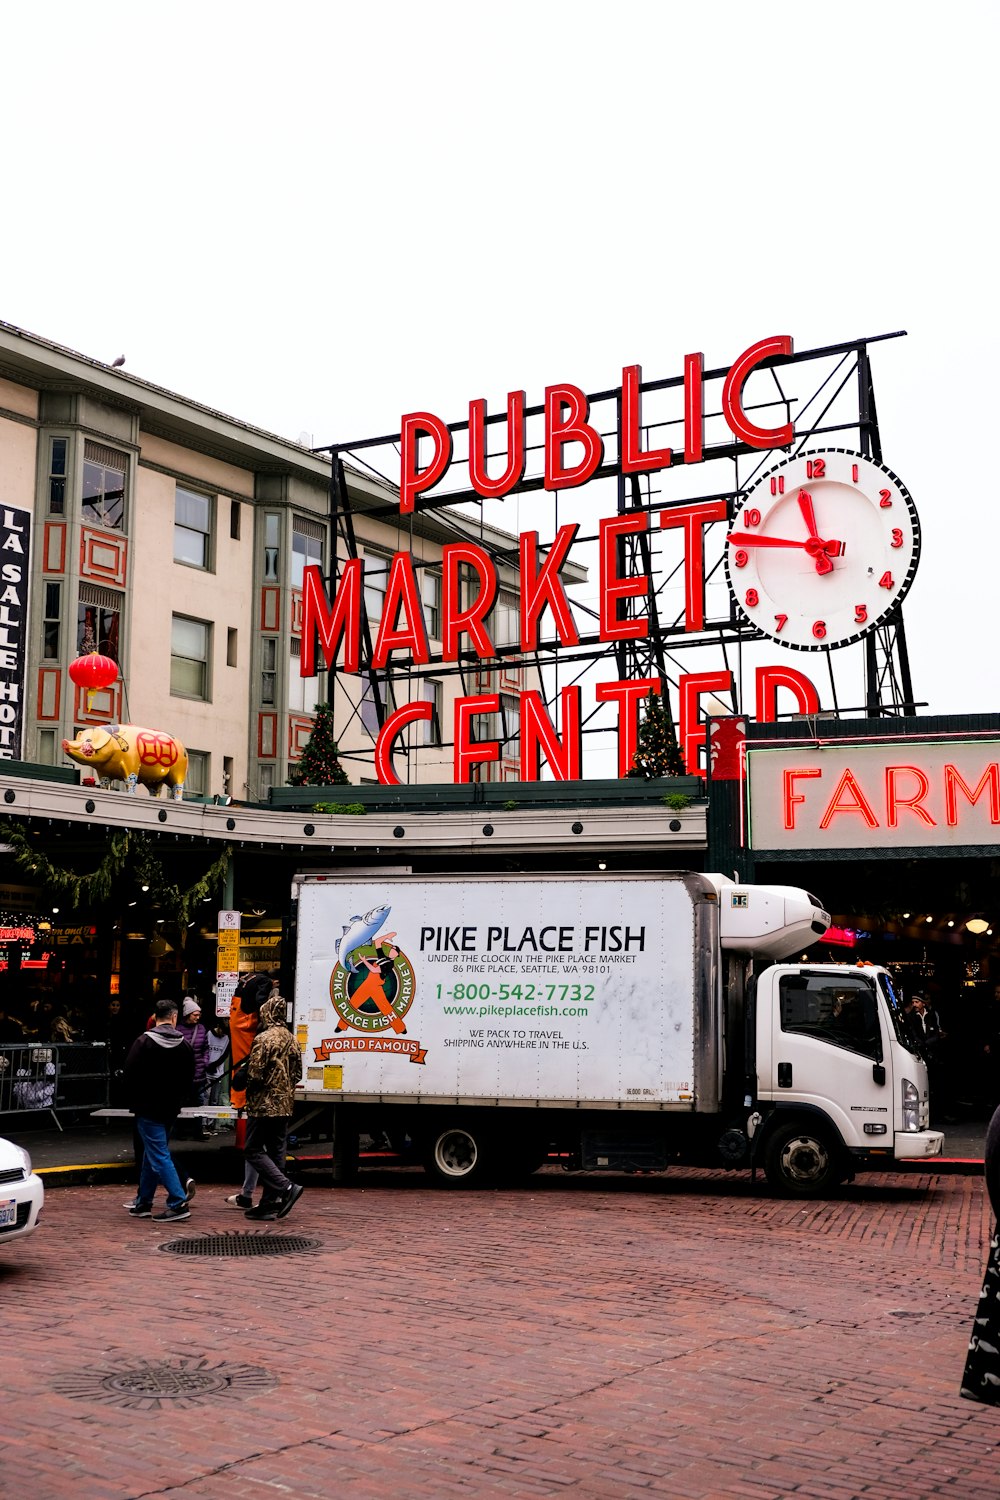 persone e camion di Luccio Place Fish luton parcheggiato accanto al Public Market Center durante il giorno